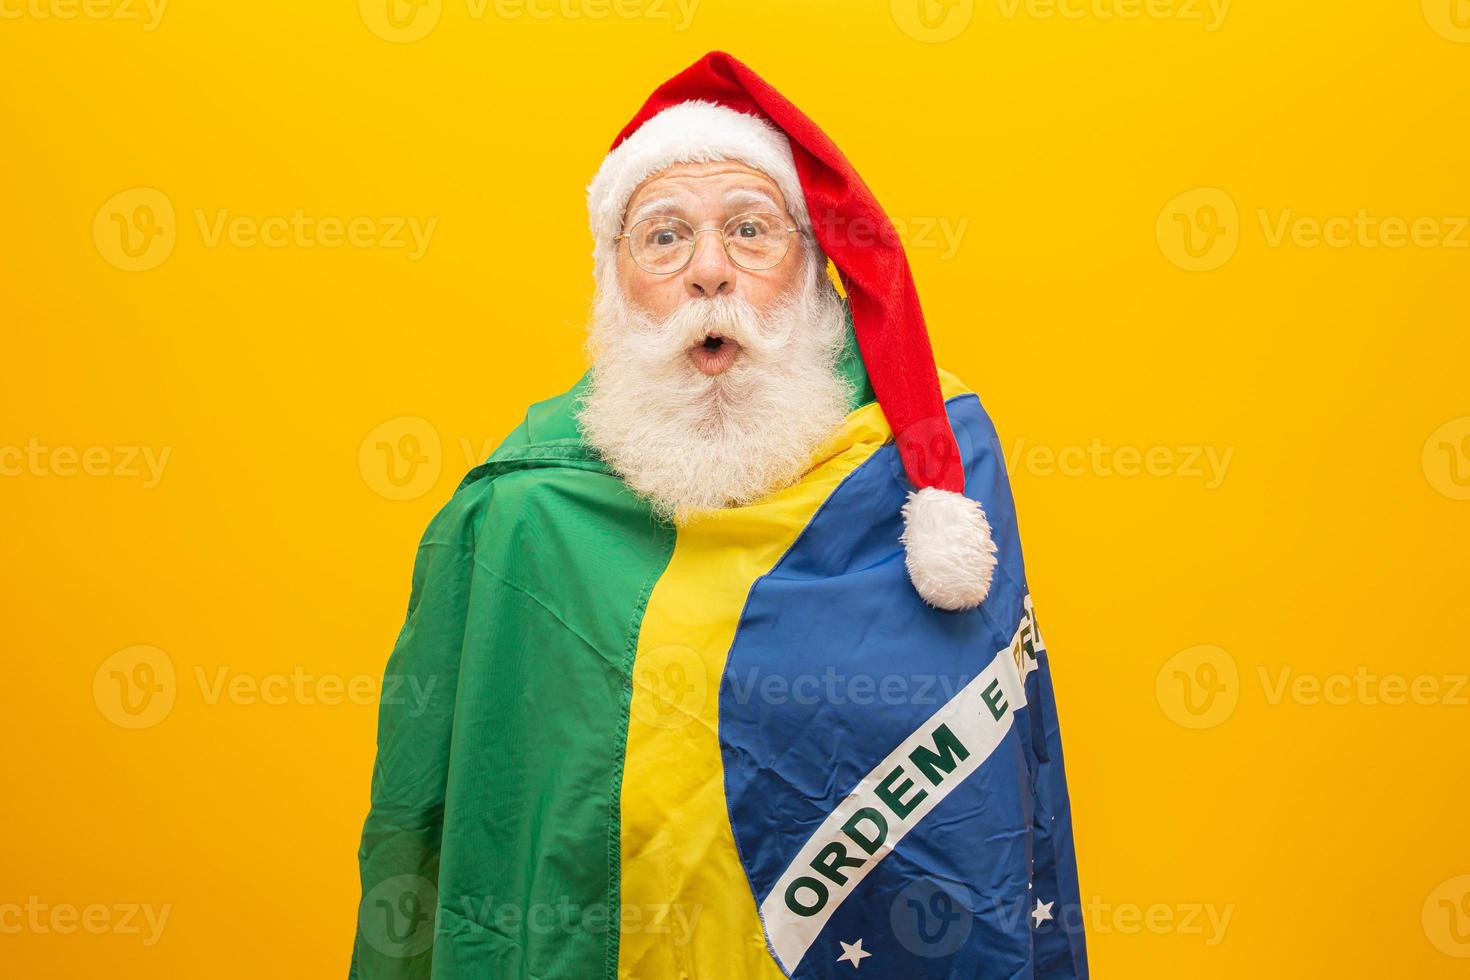 jultomten är ett fan av Brasilien. Santa Claus supporter av det brasilianska laget. idrottsmästerskap. jultomten håller den brasilianska flaggan. fotbollsmatch. foto